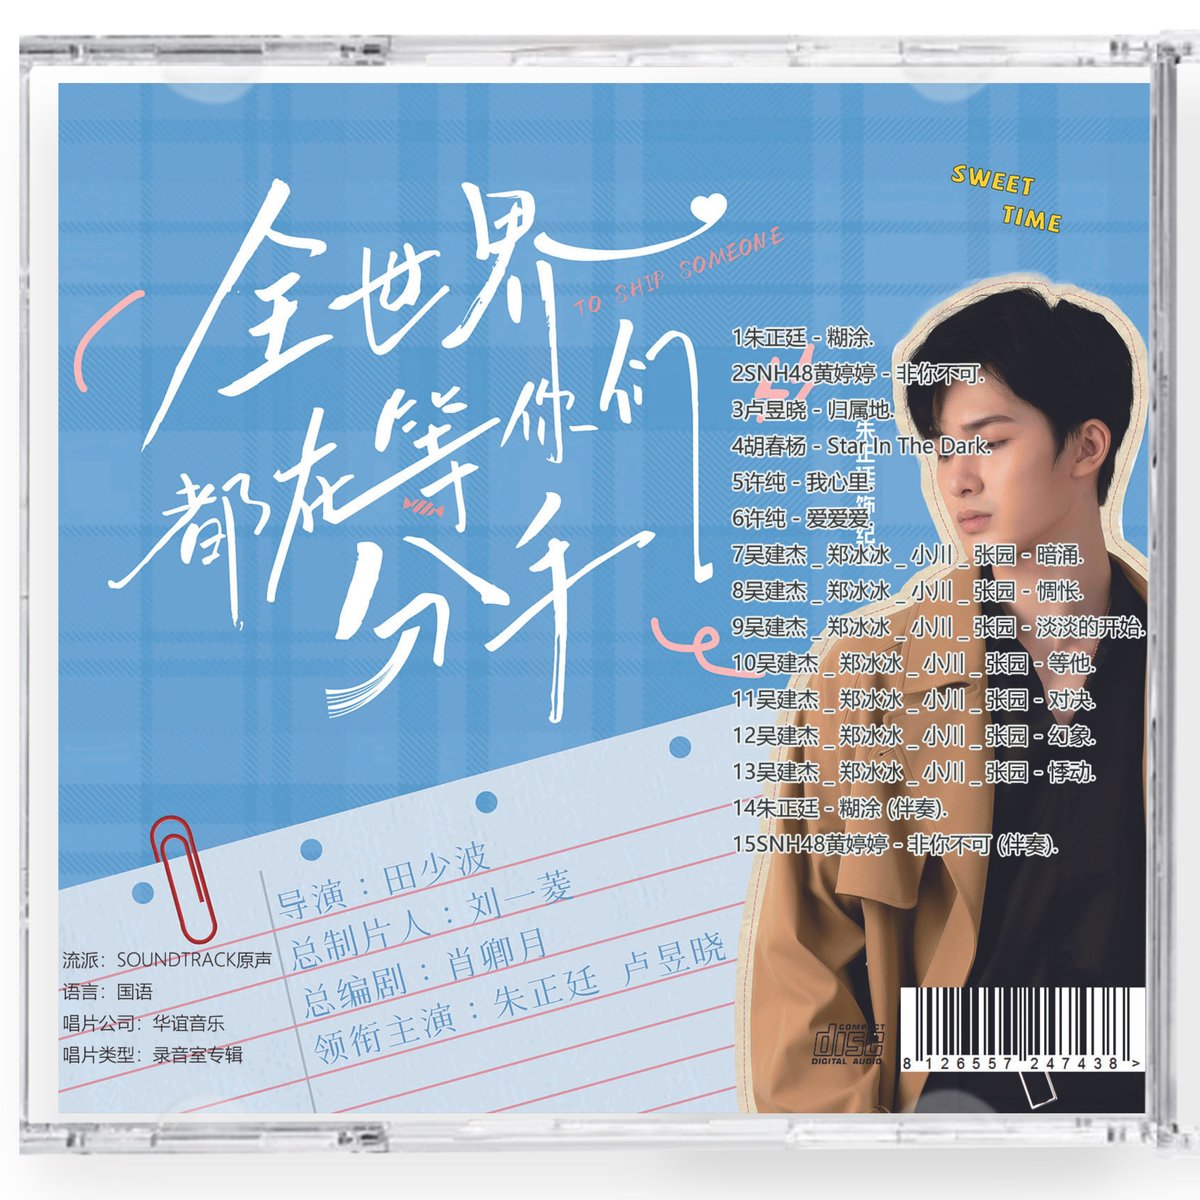 中国ドラマ『全世界都在等袮們分手』OST 1CD 15曲 To Ship Someone ジュ